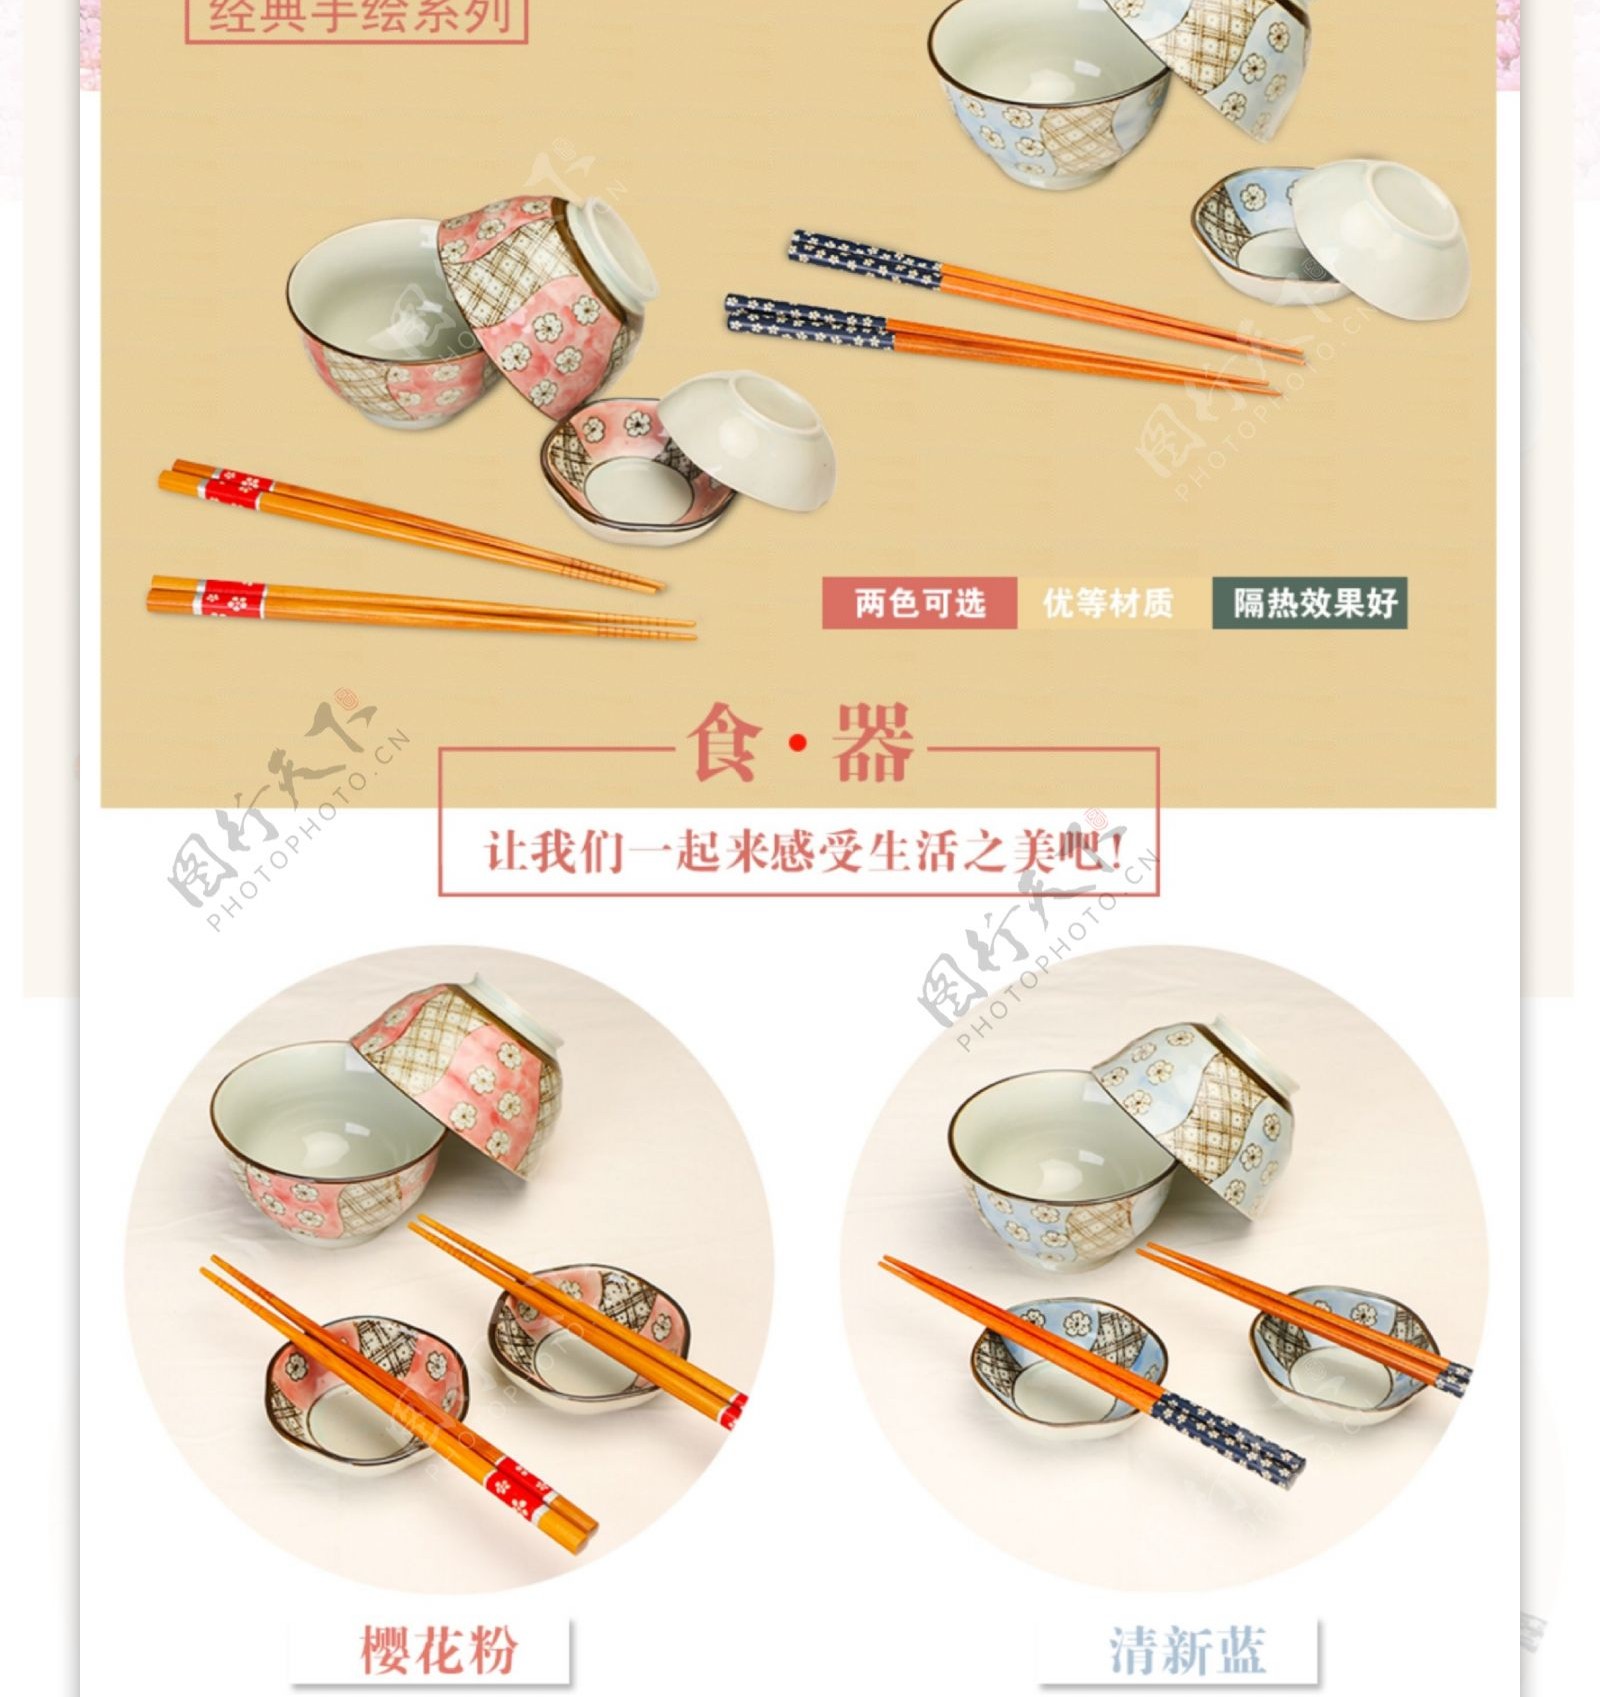 日式碗筷套装详情页